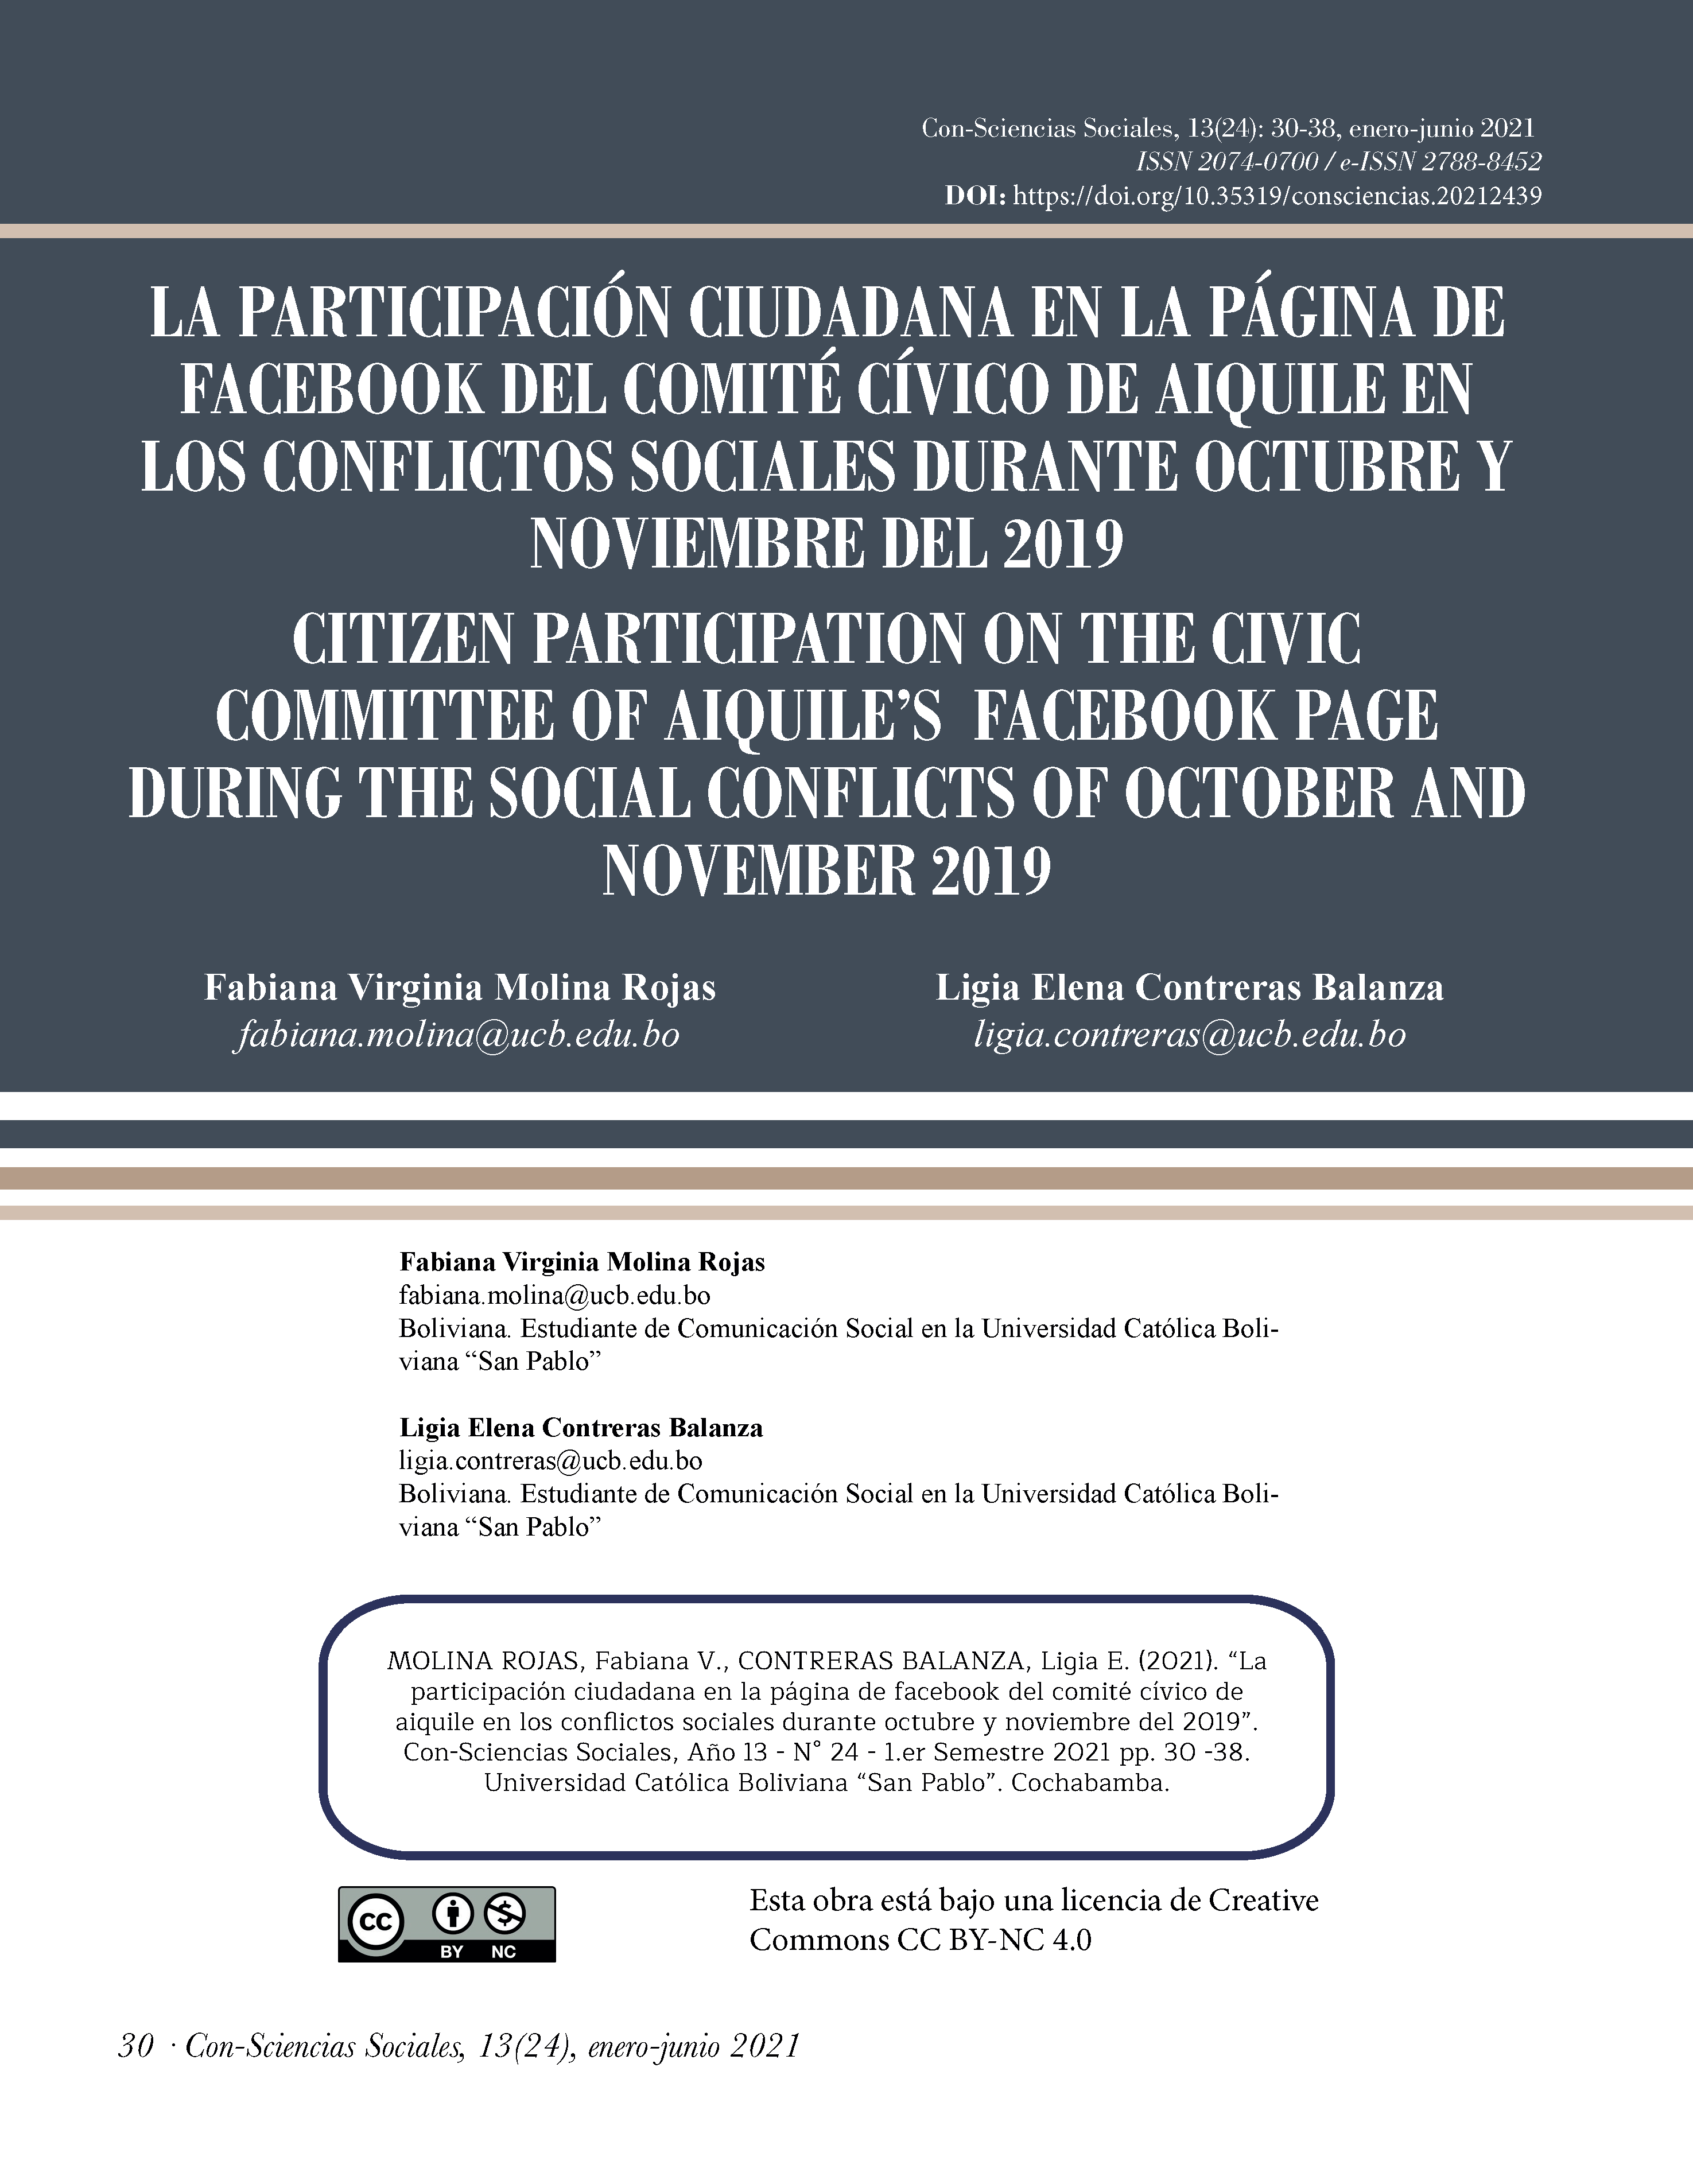 La participación ciudadana en la página de Facebook del comité cívico de Aiquile en los conflictos sociales durante octubre y noviembre del 2019